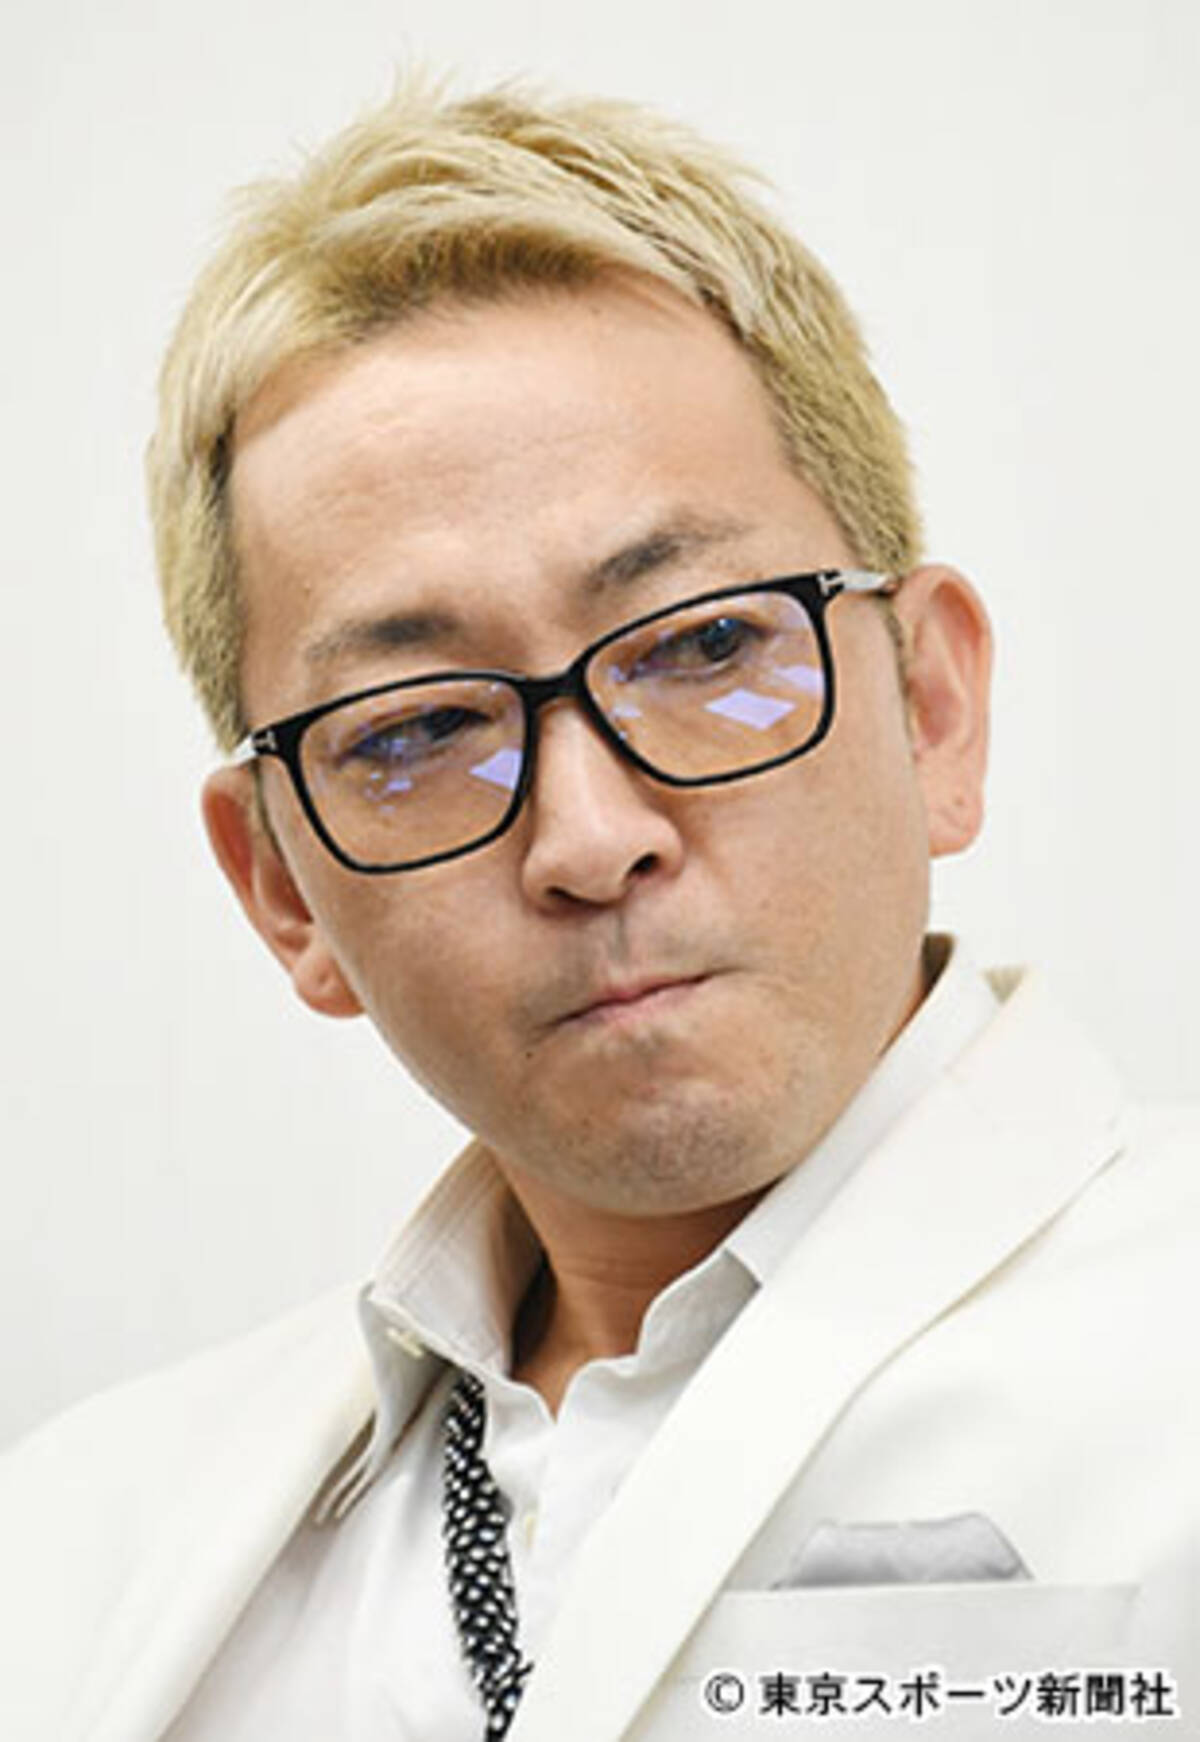 平尾さん３番目妻 関連会社社長の職を解かれる 18年9月26日 エキサイトニュース